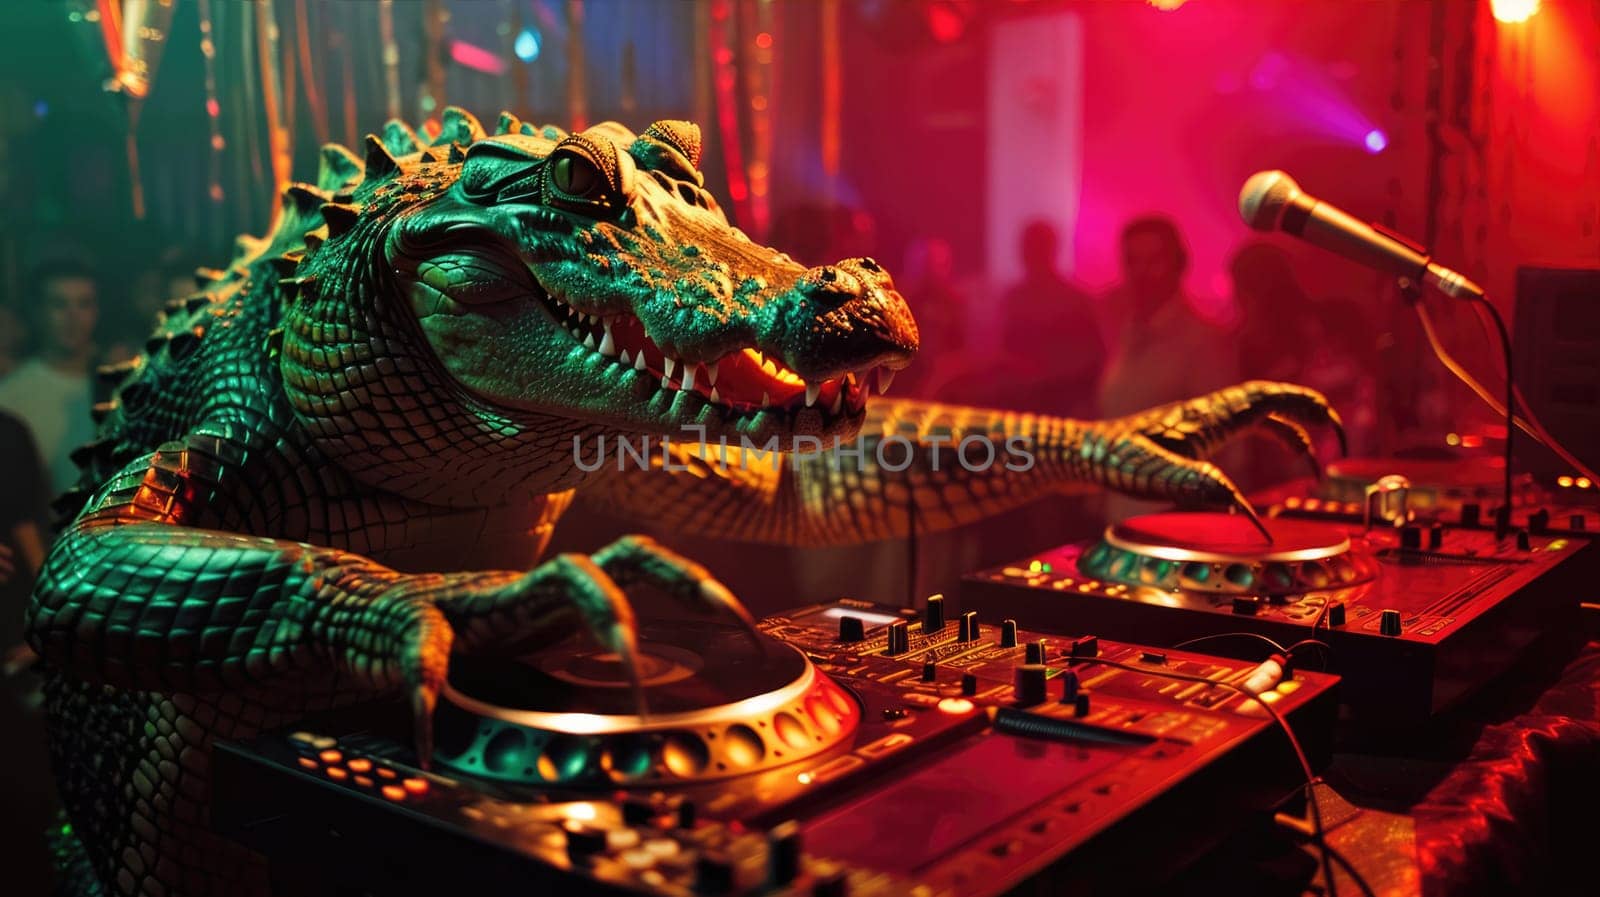 Alligator DJ Crocodile at a party in night club by natali_brill